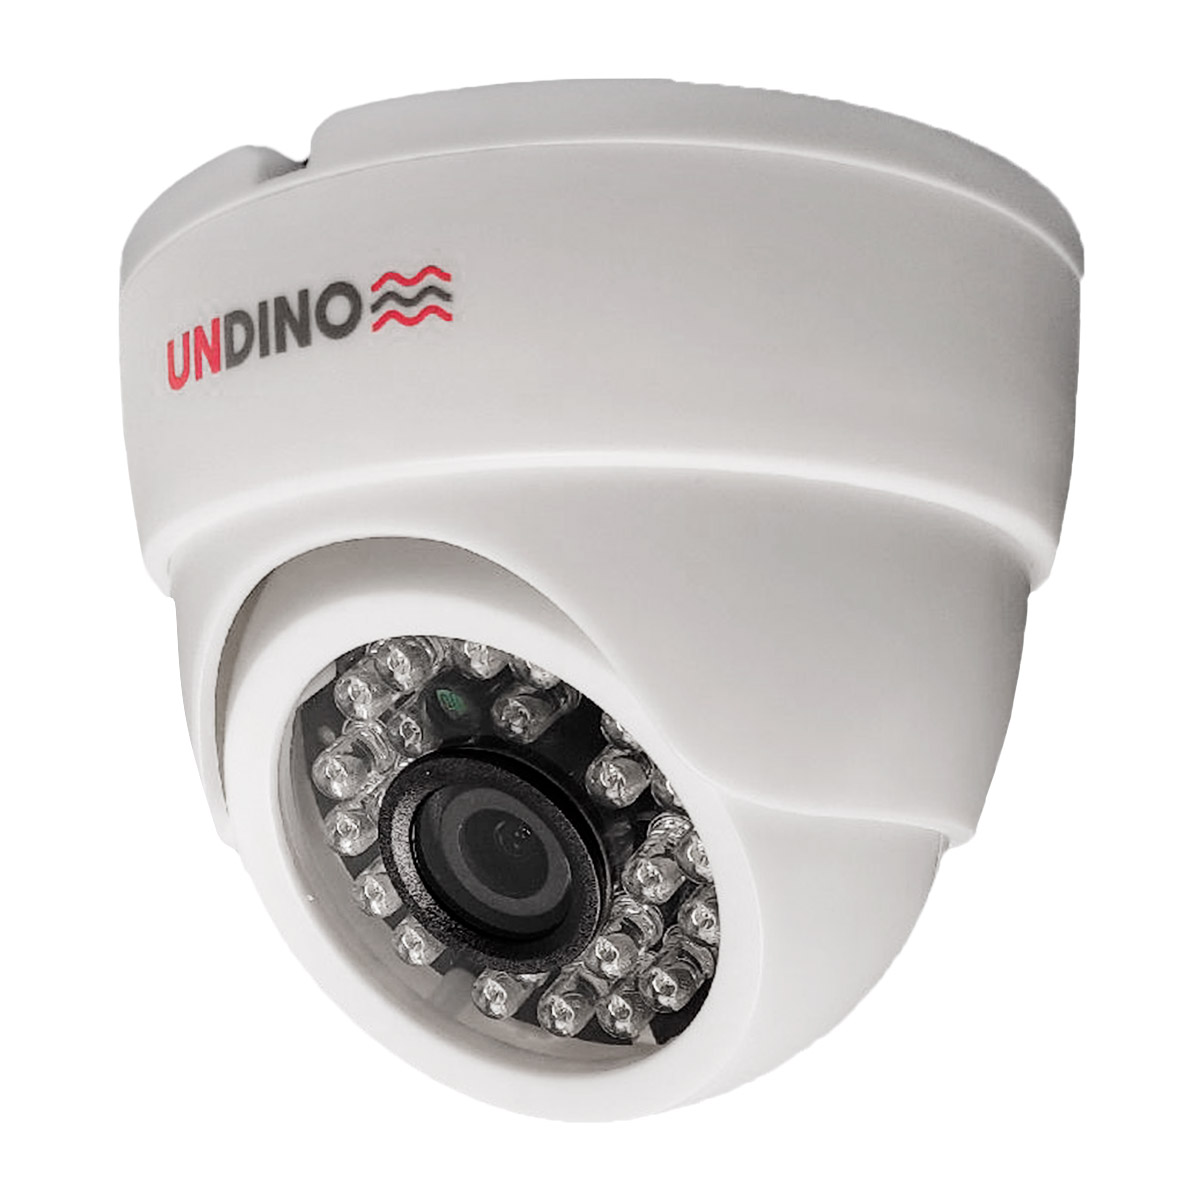 Купольная камера видеонаблюдения IP 2Мп Undino UD-ED02IP цифровая с POE питанием камера видеонаблюдения xmeye купольная мультиформатная 350ahd5pw 2 8